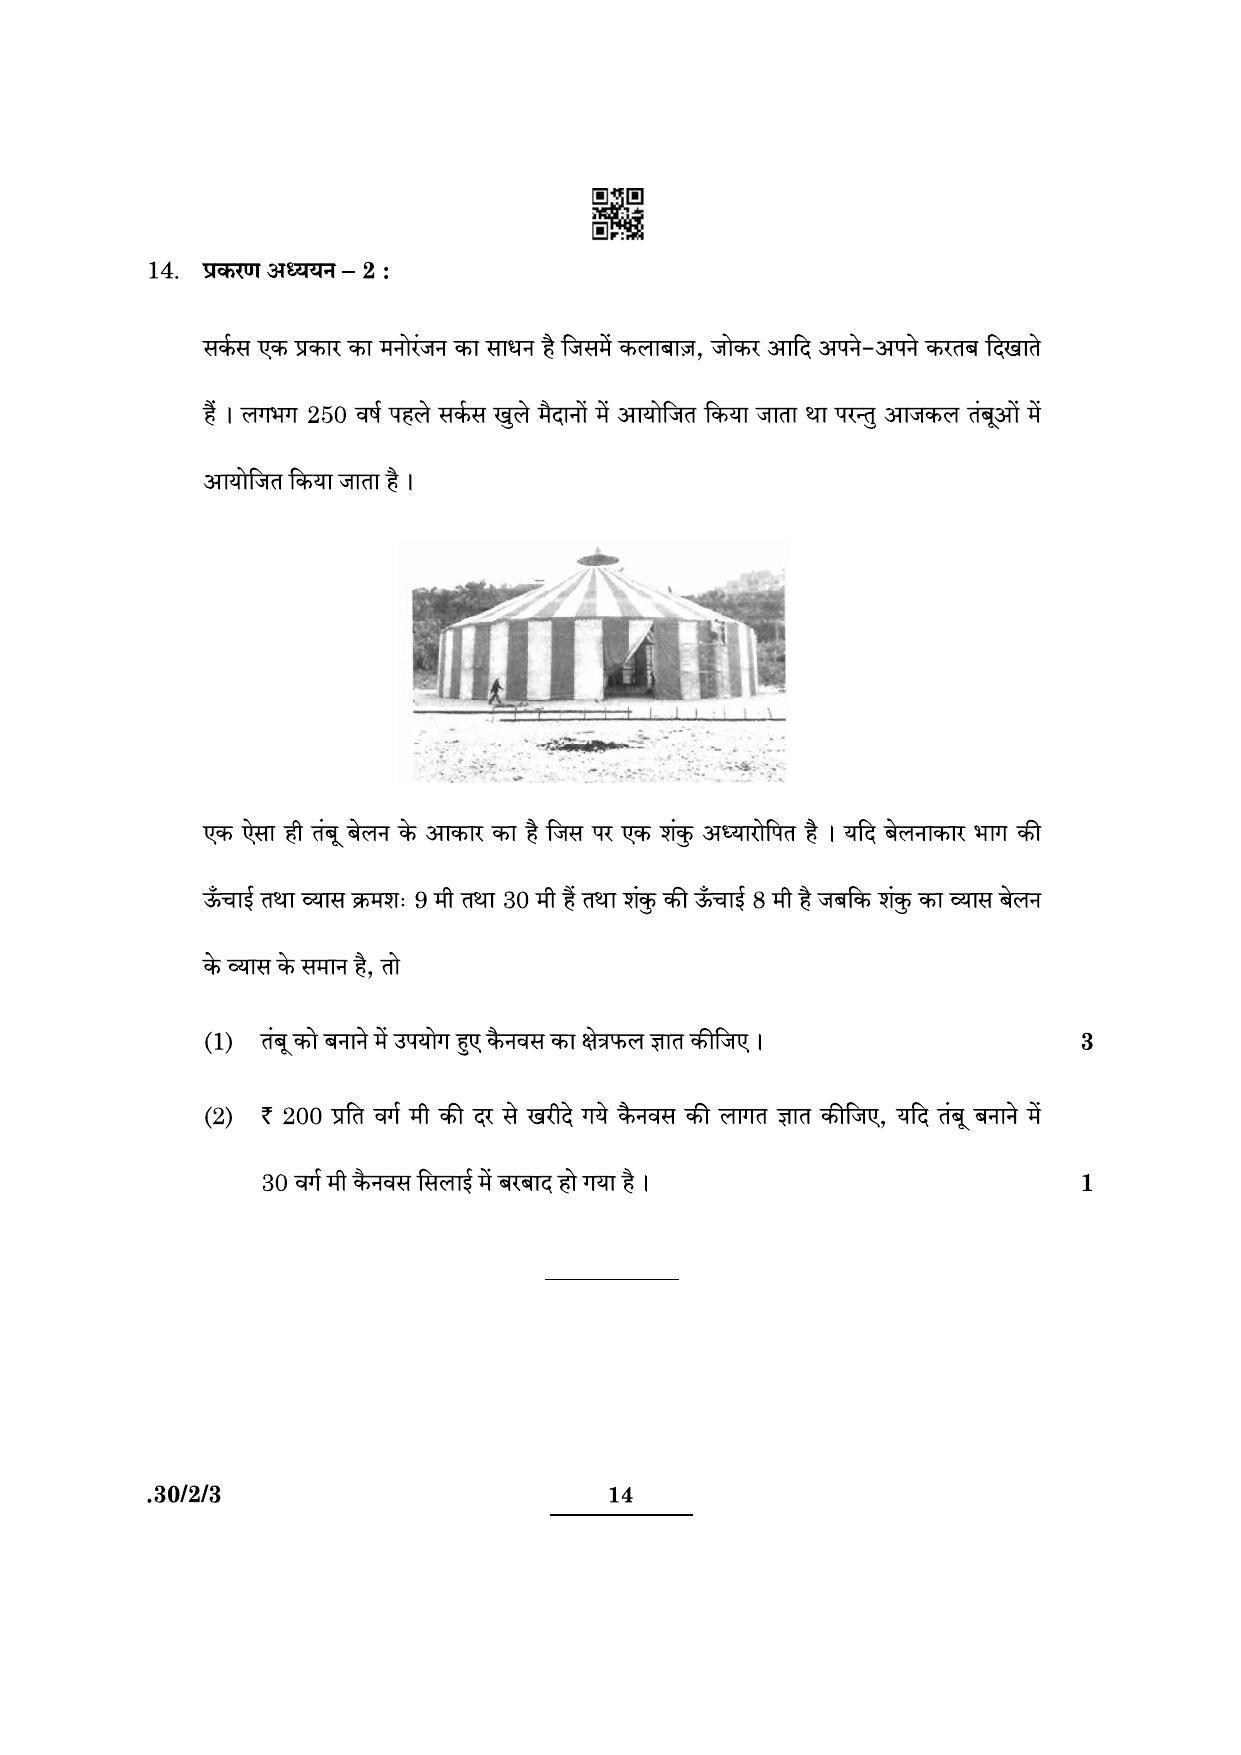 CBSE Class 10 Maths (30/2/3 - SET III) 2022 Question Paper - Page 14